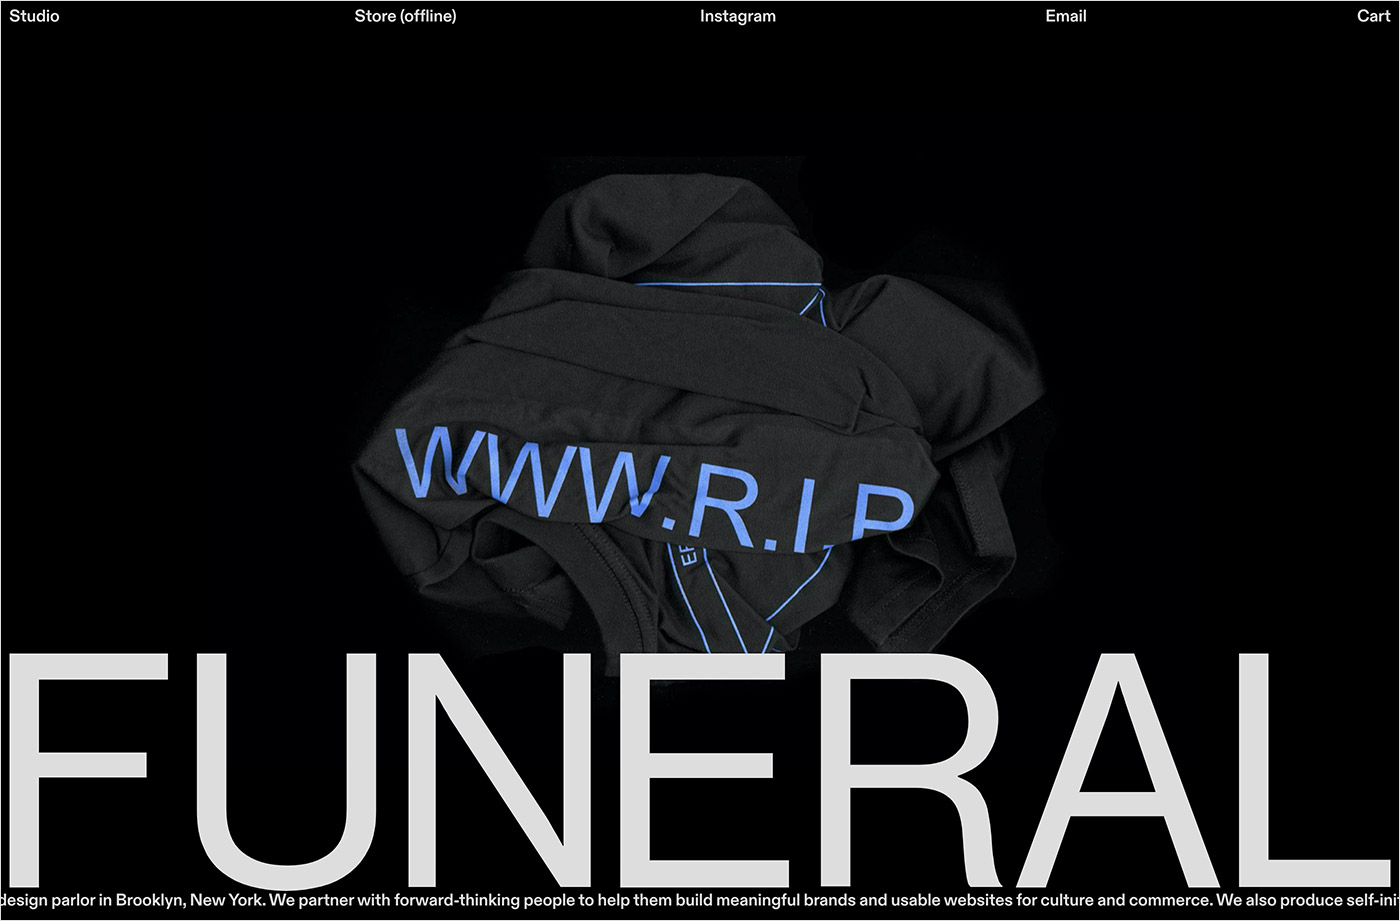 funeral2021ウェブサイトの画面キャプチャ画像